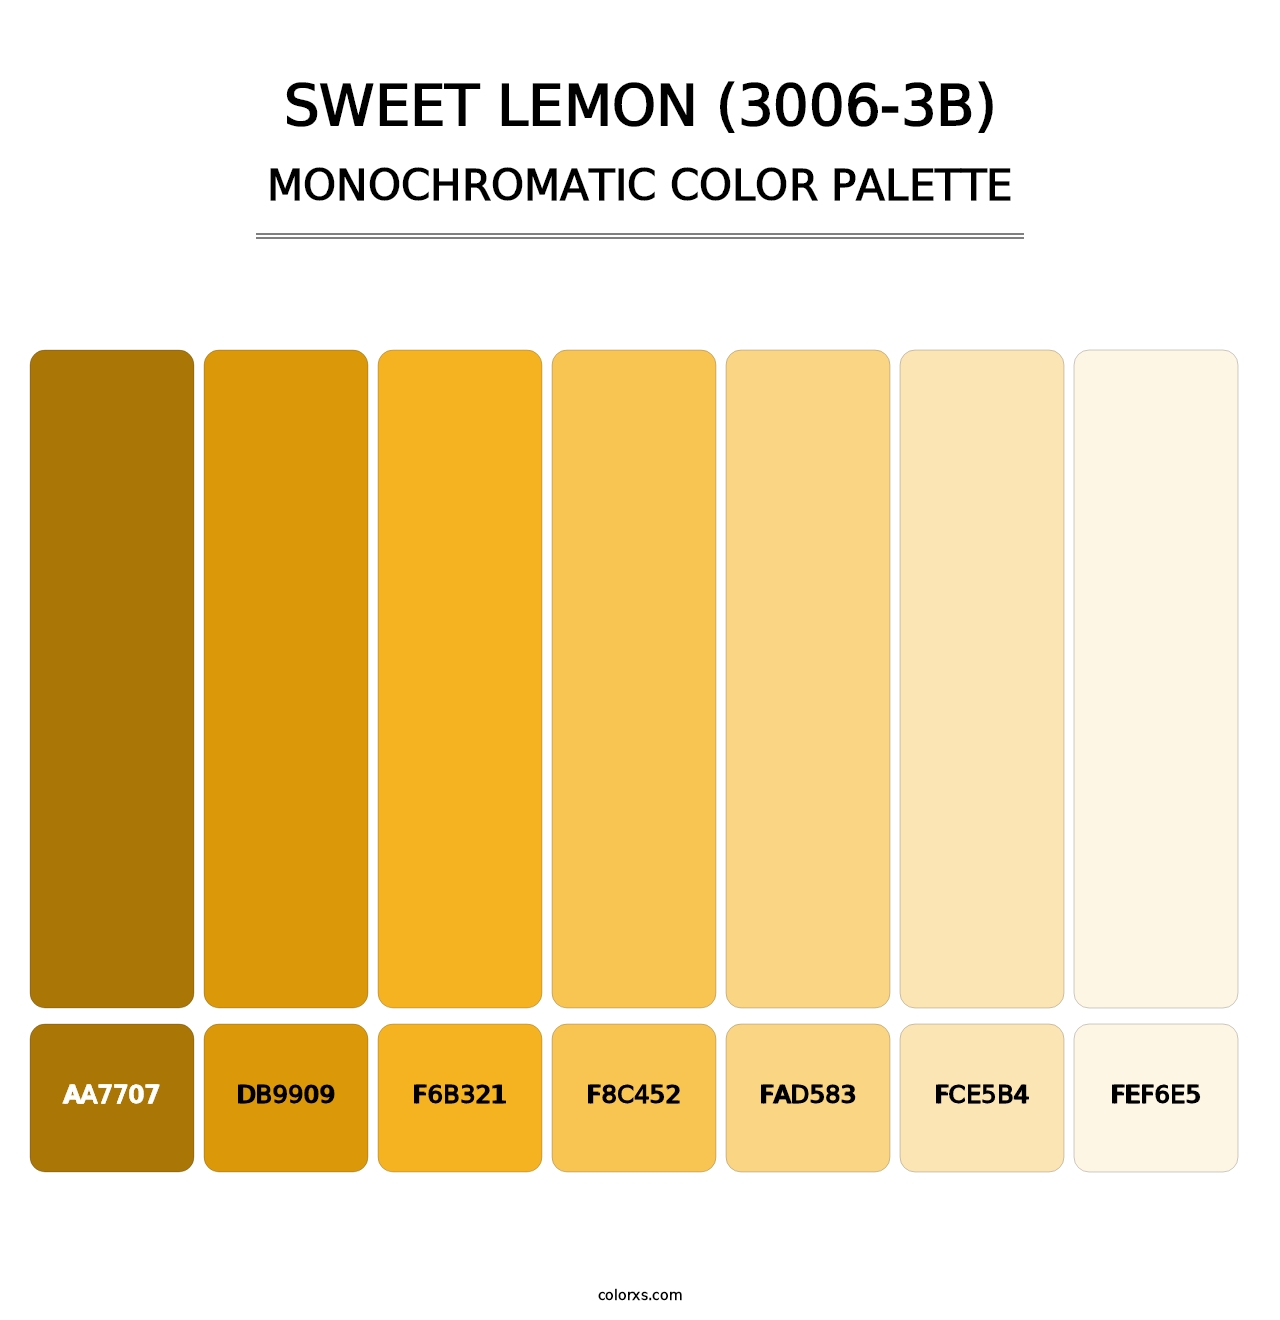 Sweet Lemon (3006-3B) - Monochromatic Color Palette